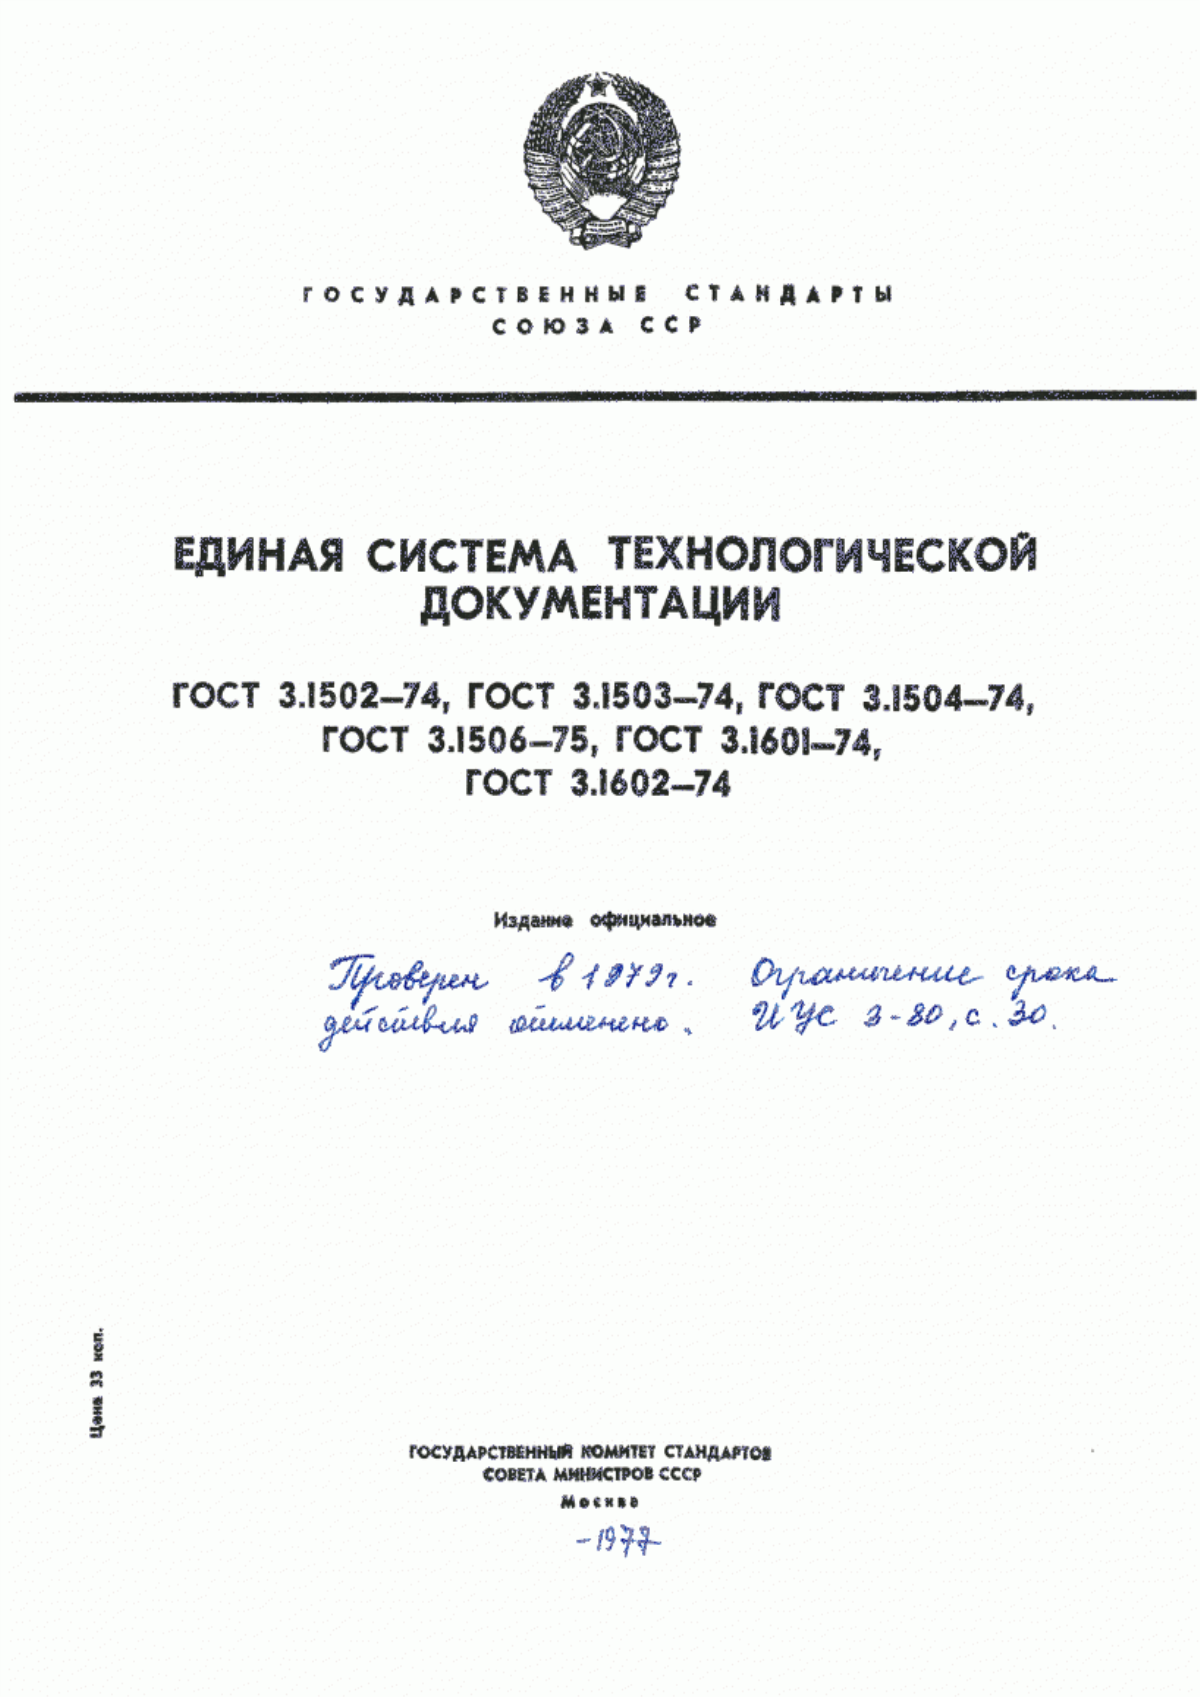 ГОСТ 3.1601-74 Единая система технологической документации. Правила оформления документов, обращающихся в ремонтных и инструментальных цехах